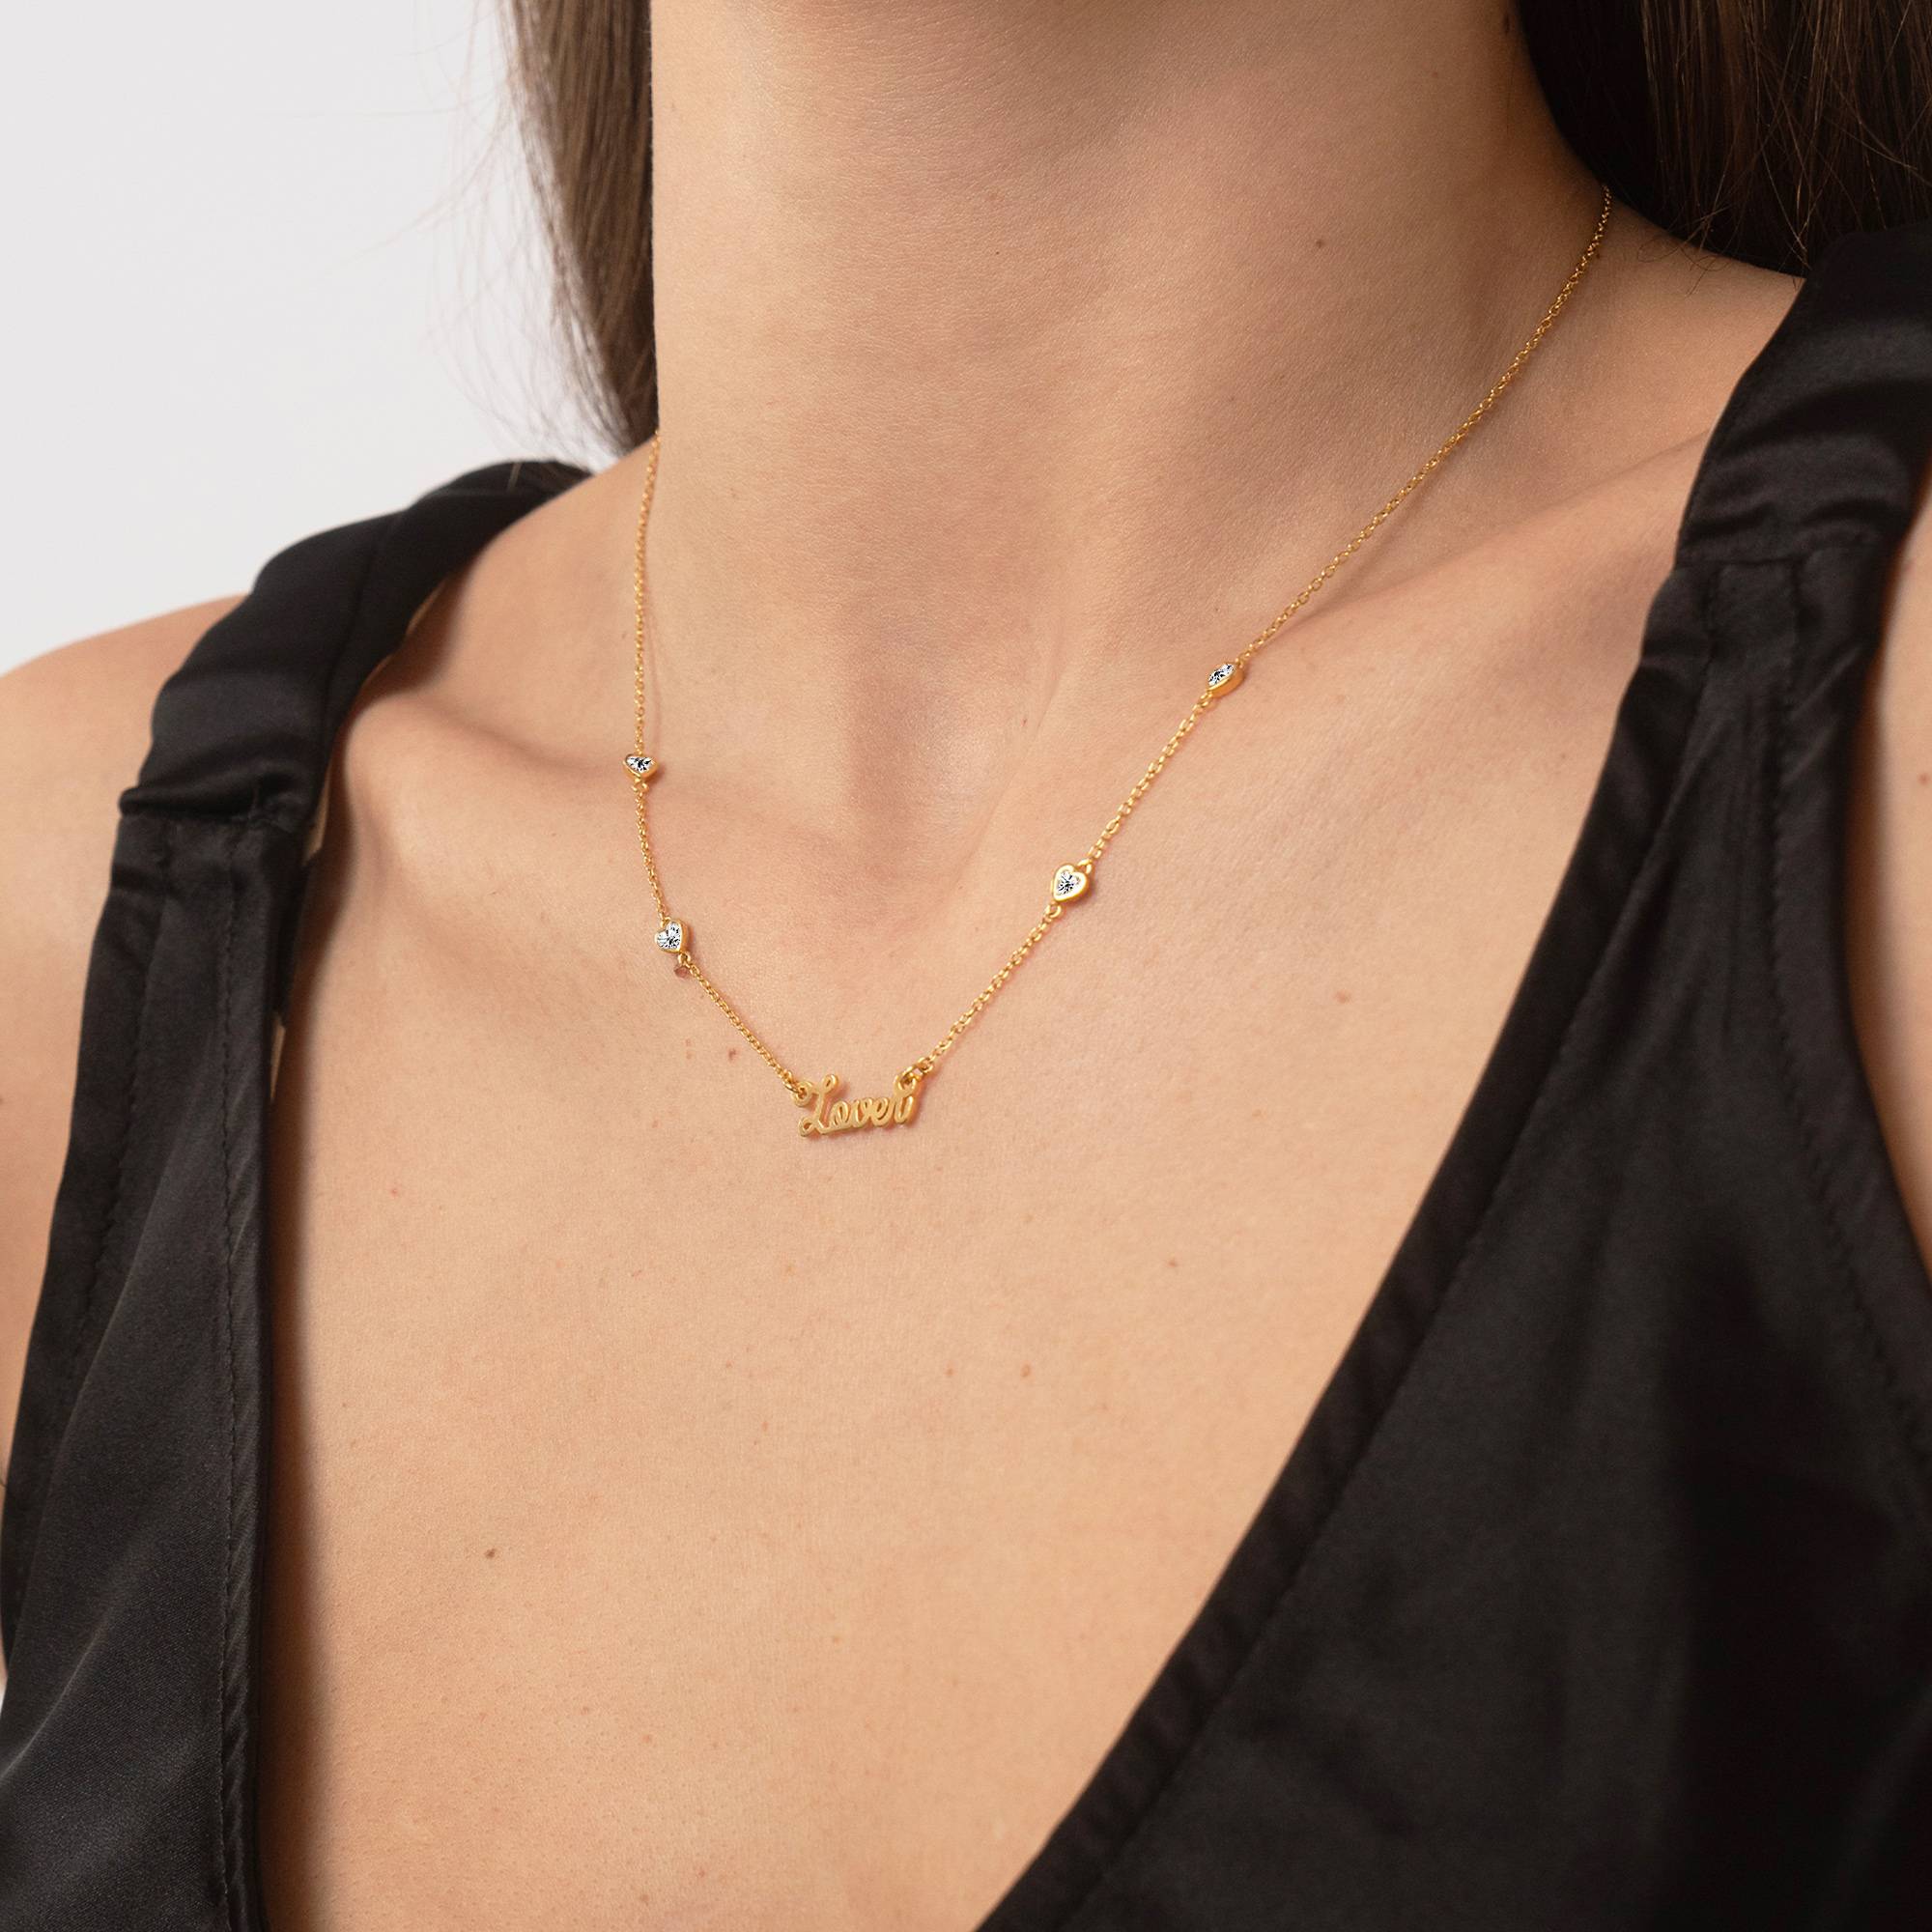 Charli Heart Chain Name Necklace i 18k gullforgyldt-3 produktbilde